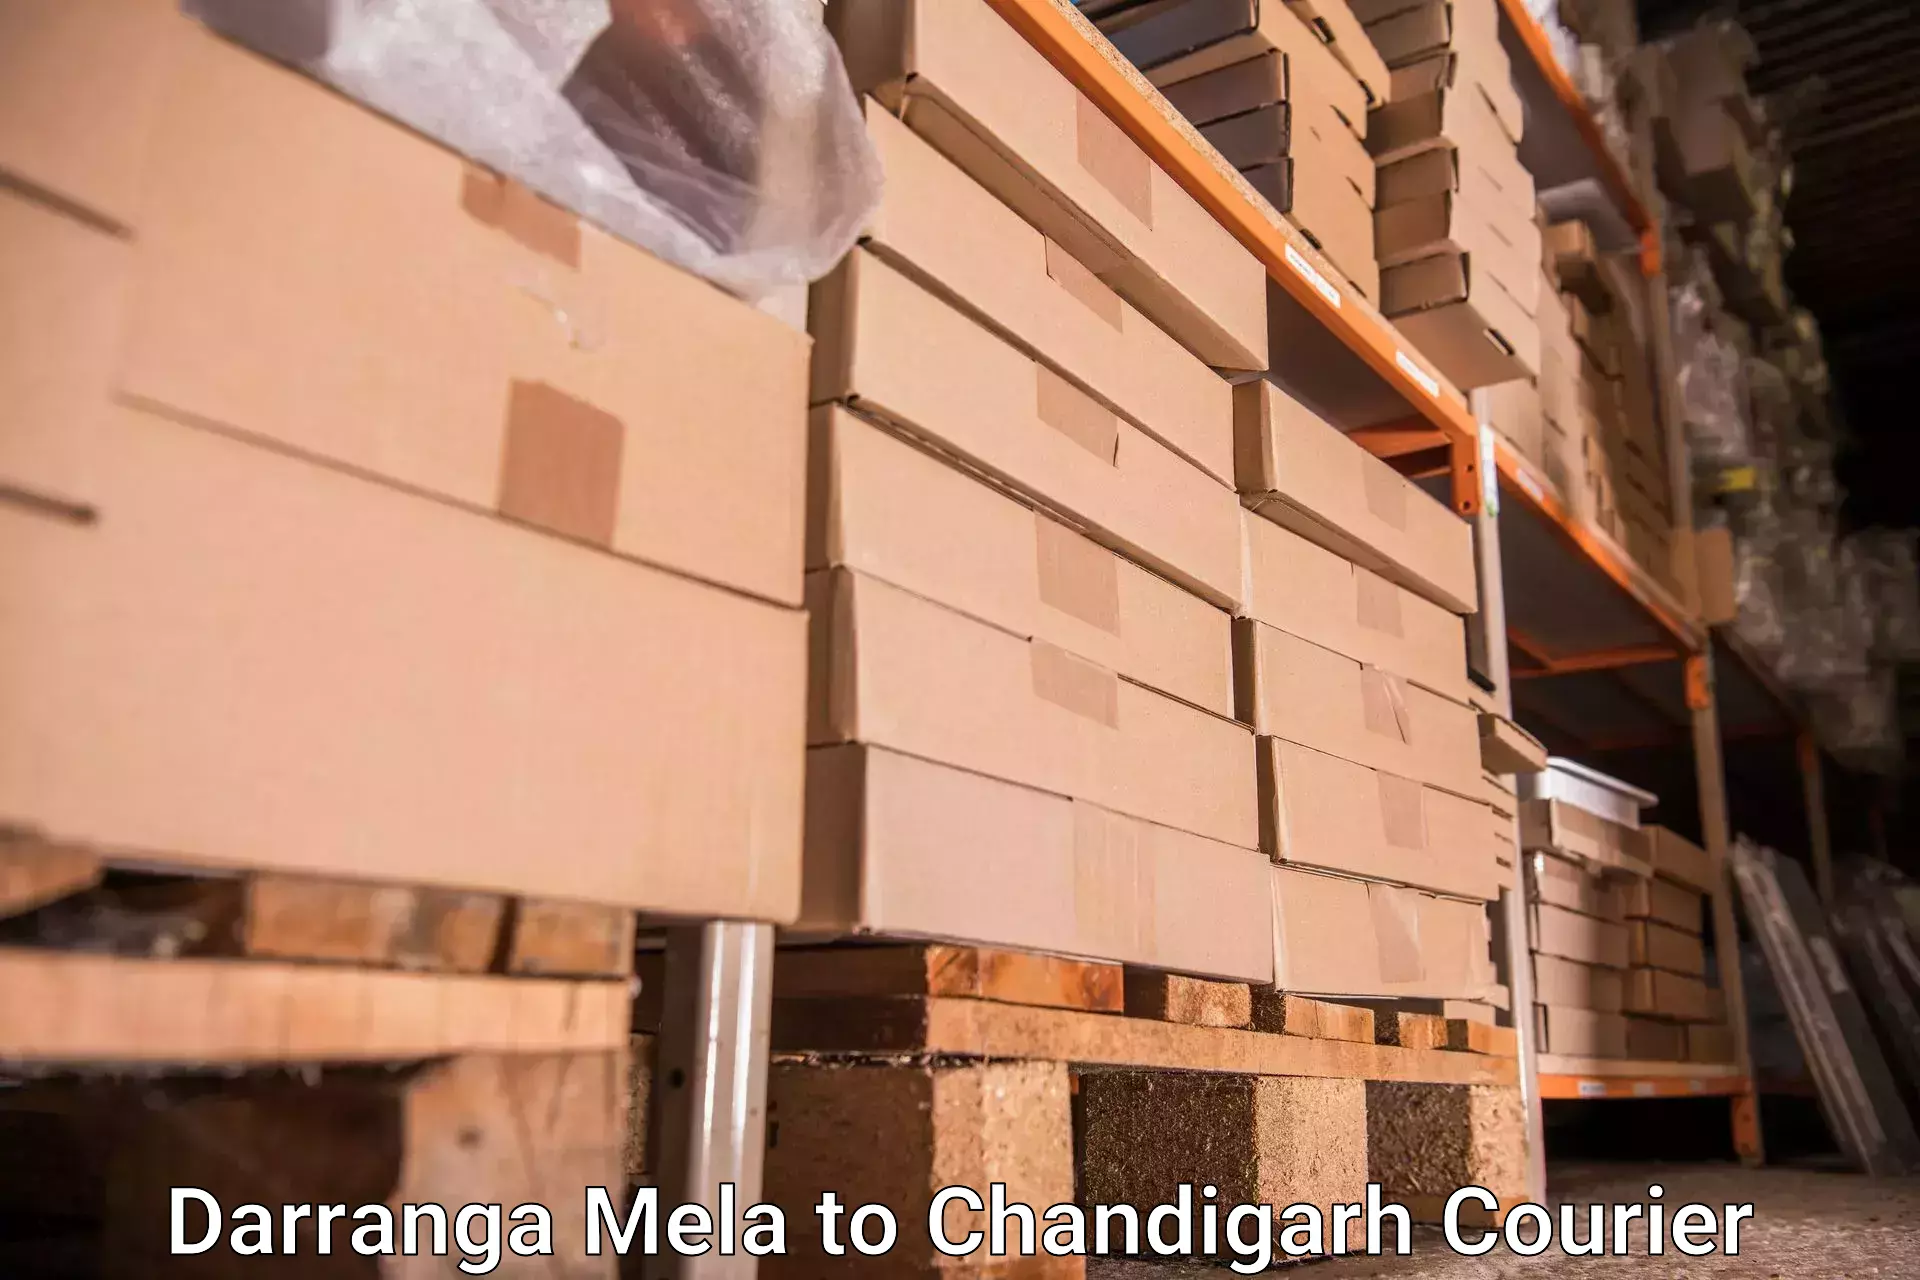 Luggage forwarding service Darranga Mela to Chandigarh